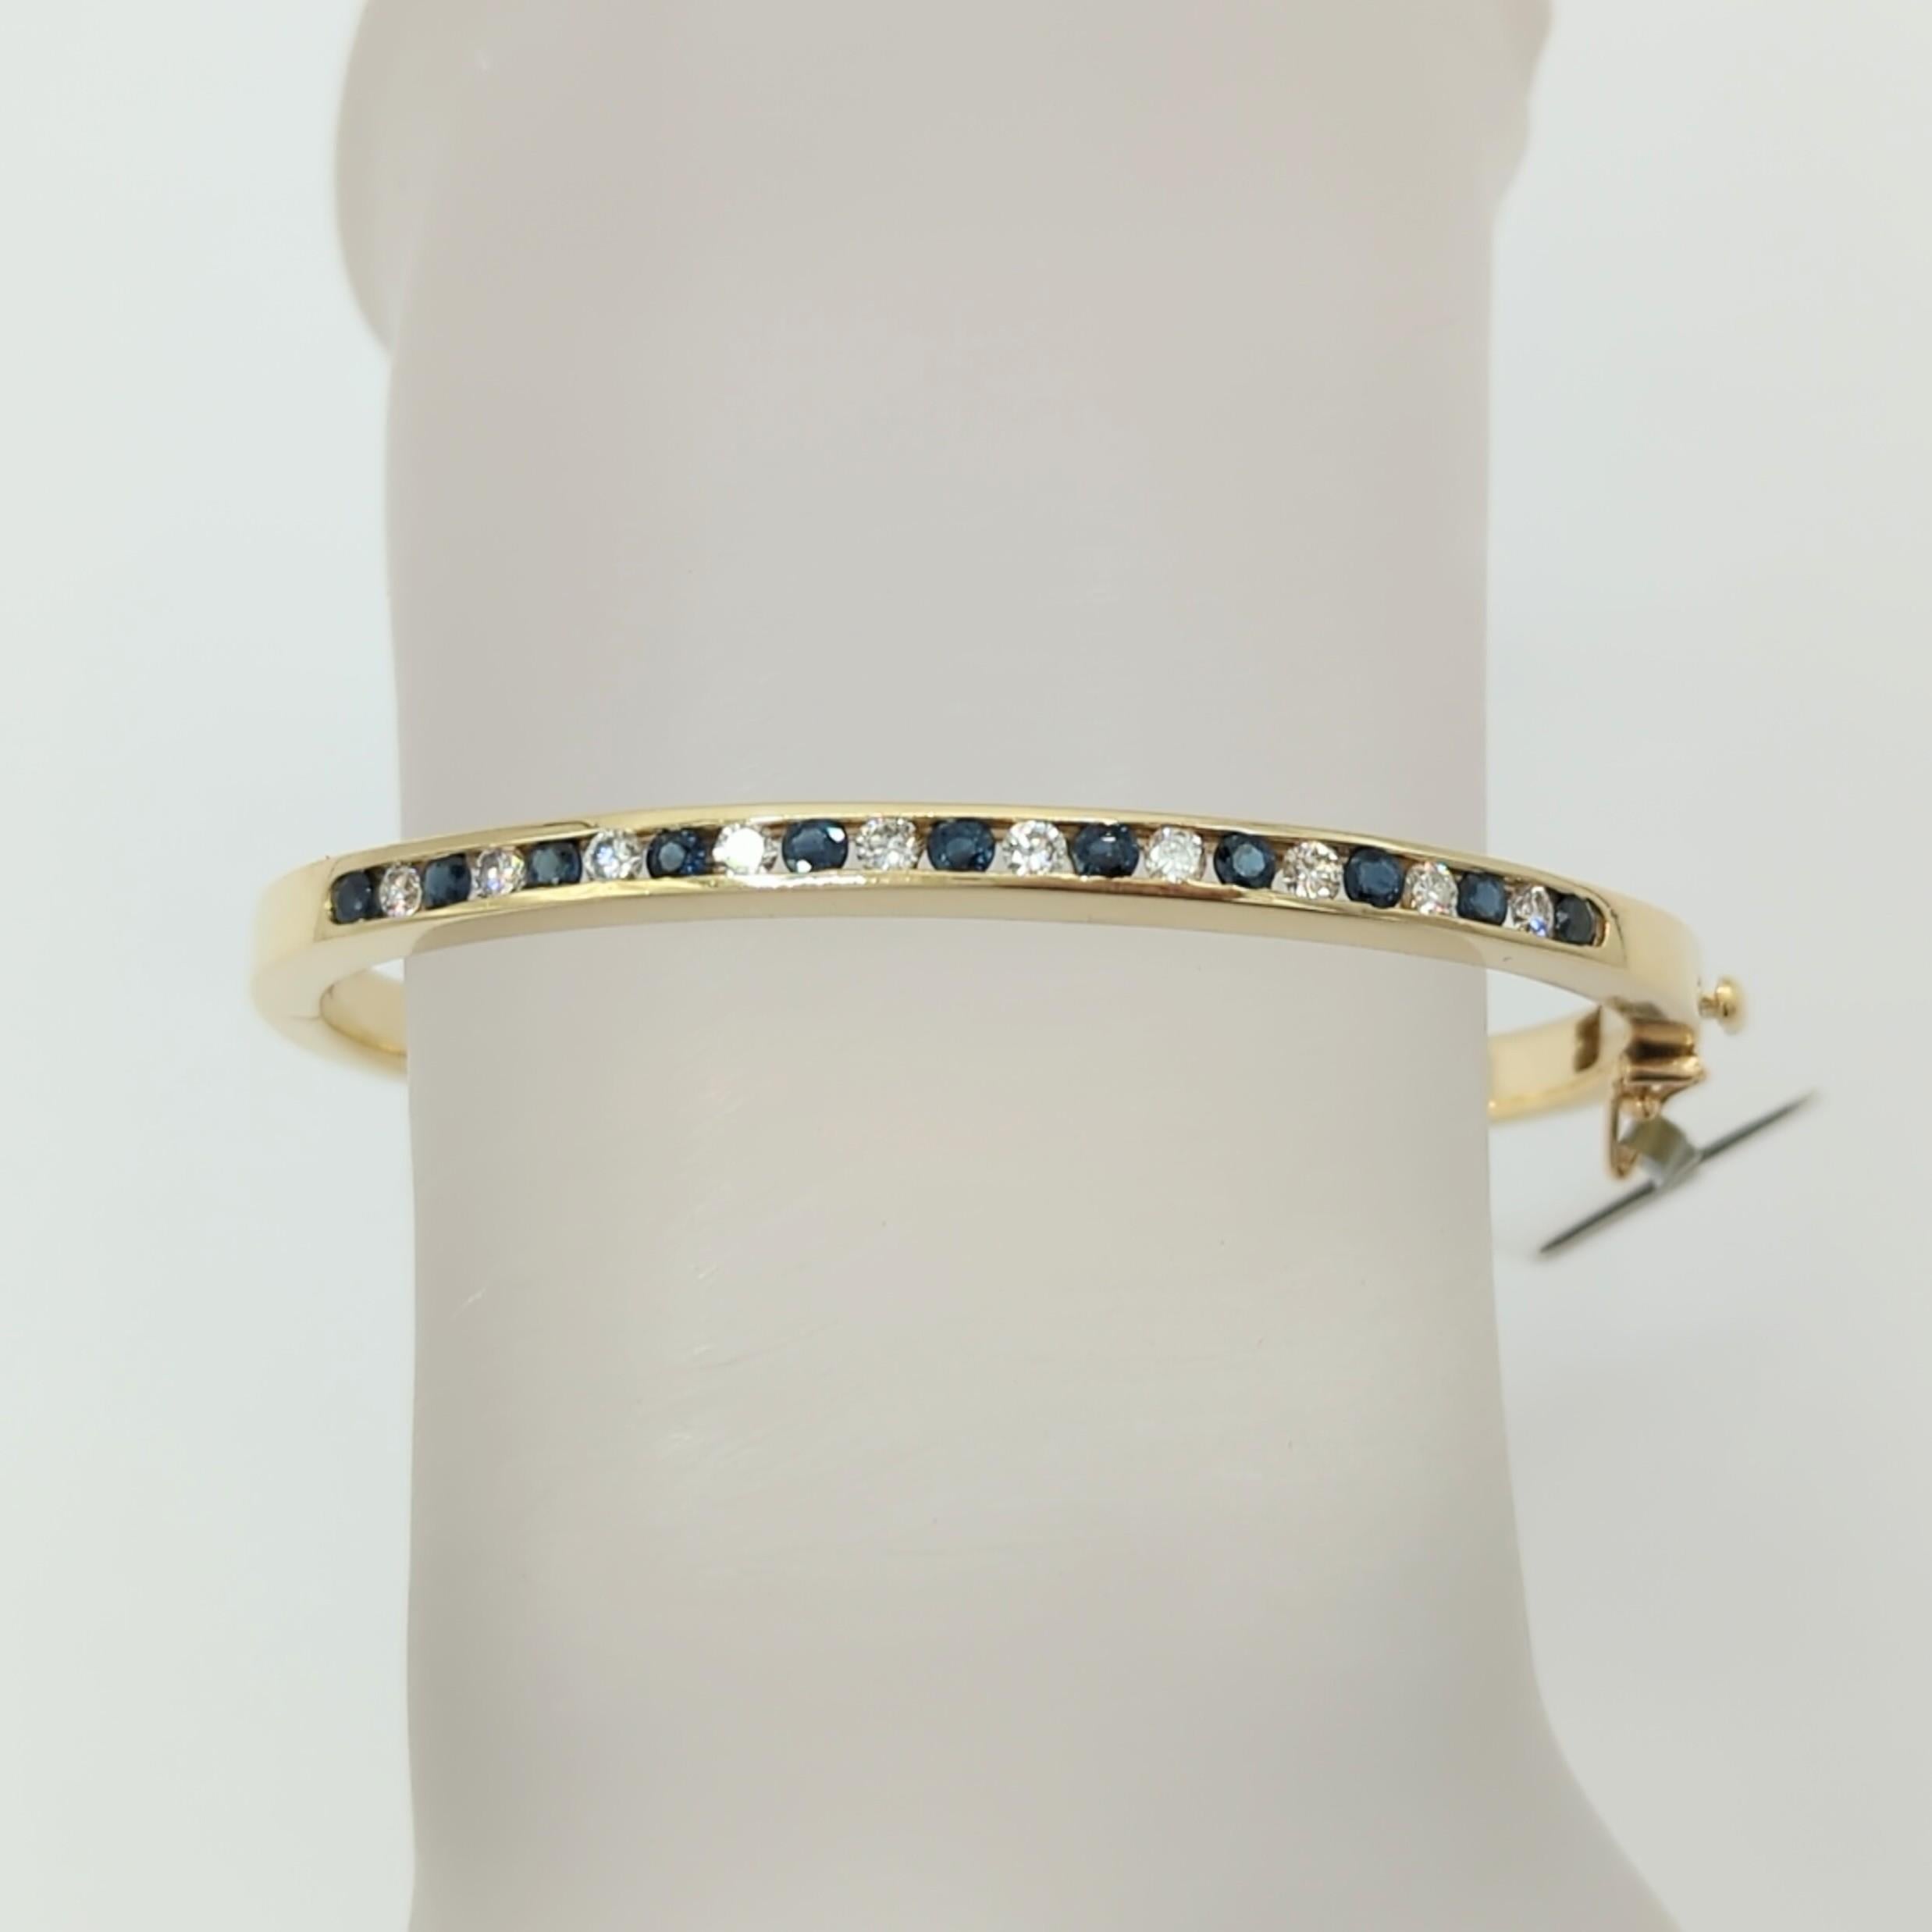 Schöner Armreif mit runden weißen Diamanten und blauen Saphiren von guter Qualität.  Handgefertigt in 14k Gelbgold.  Perfekt zum Stapeln oder als Einzelstück zu tragen.